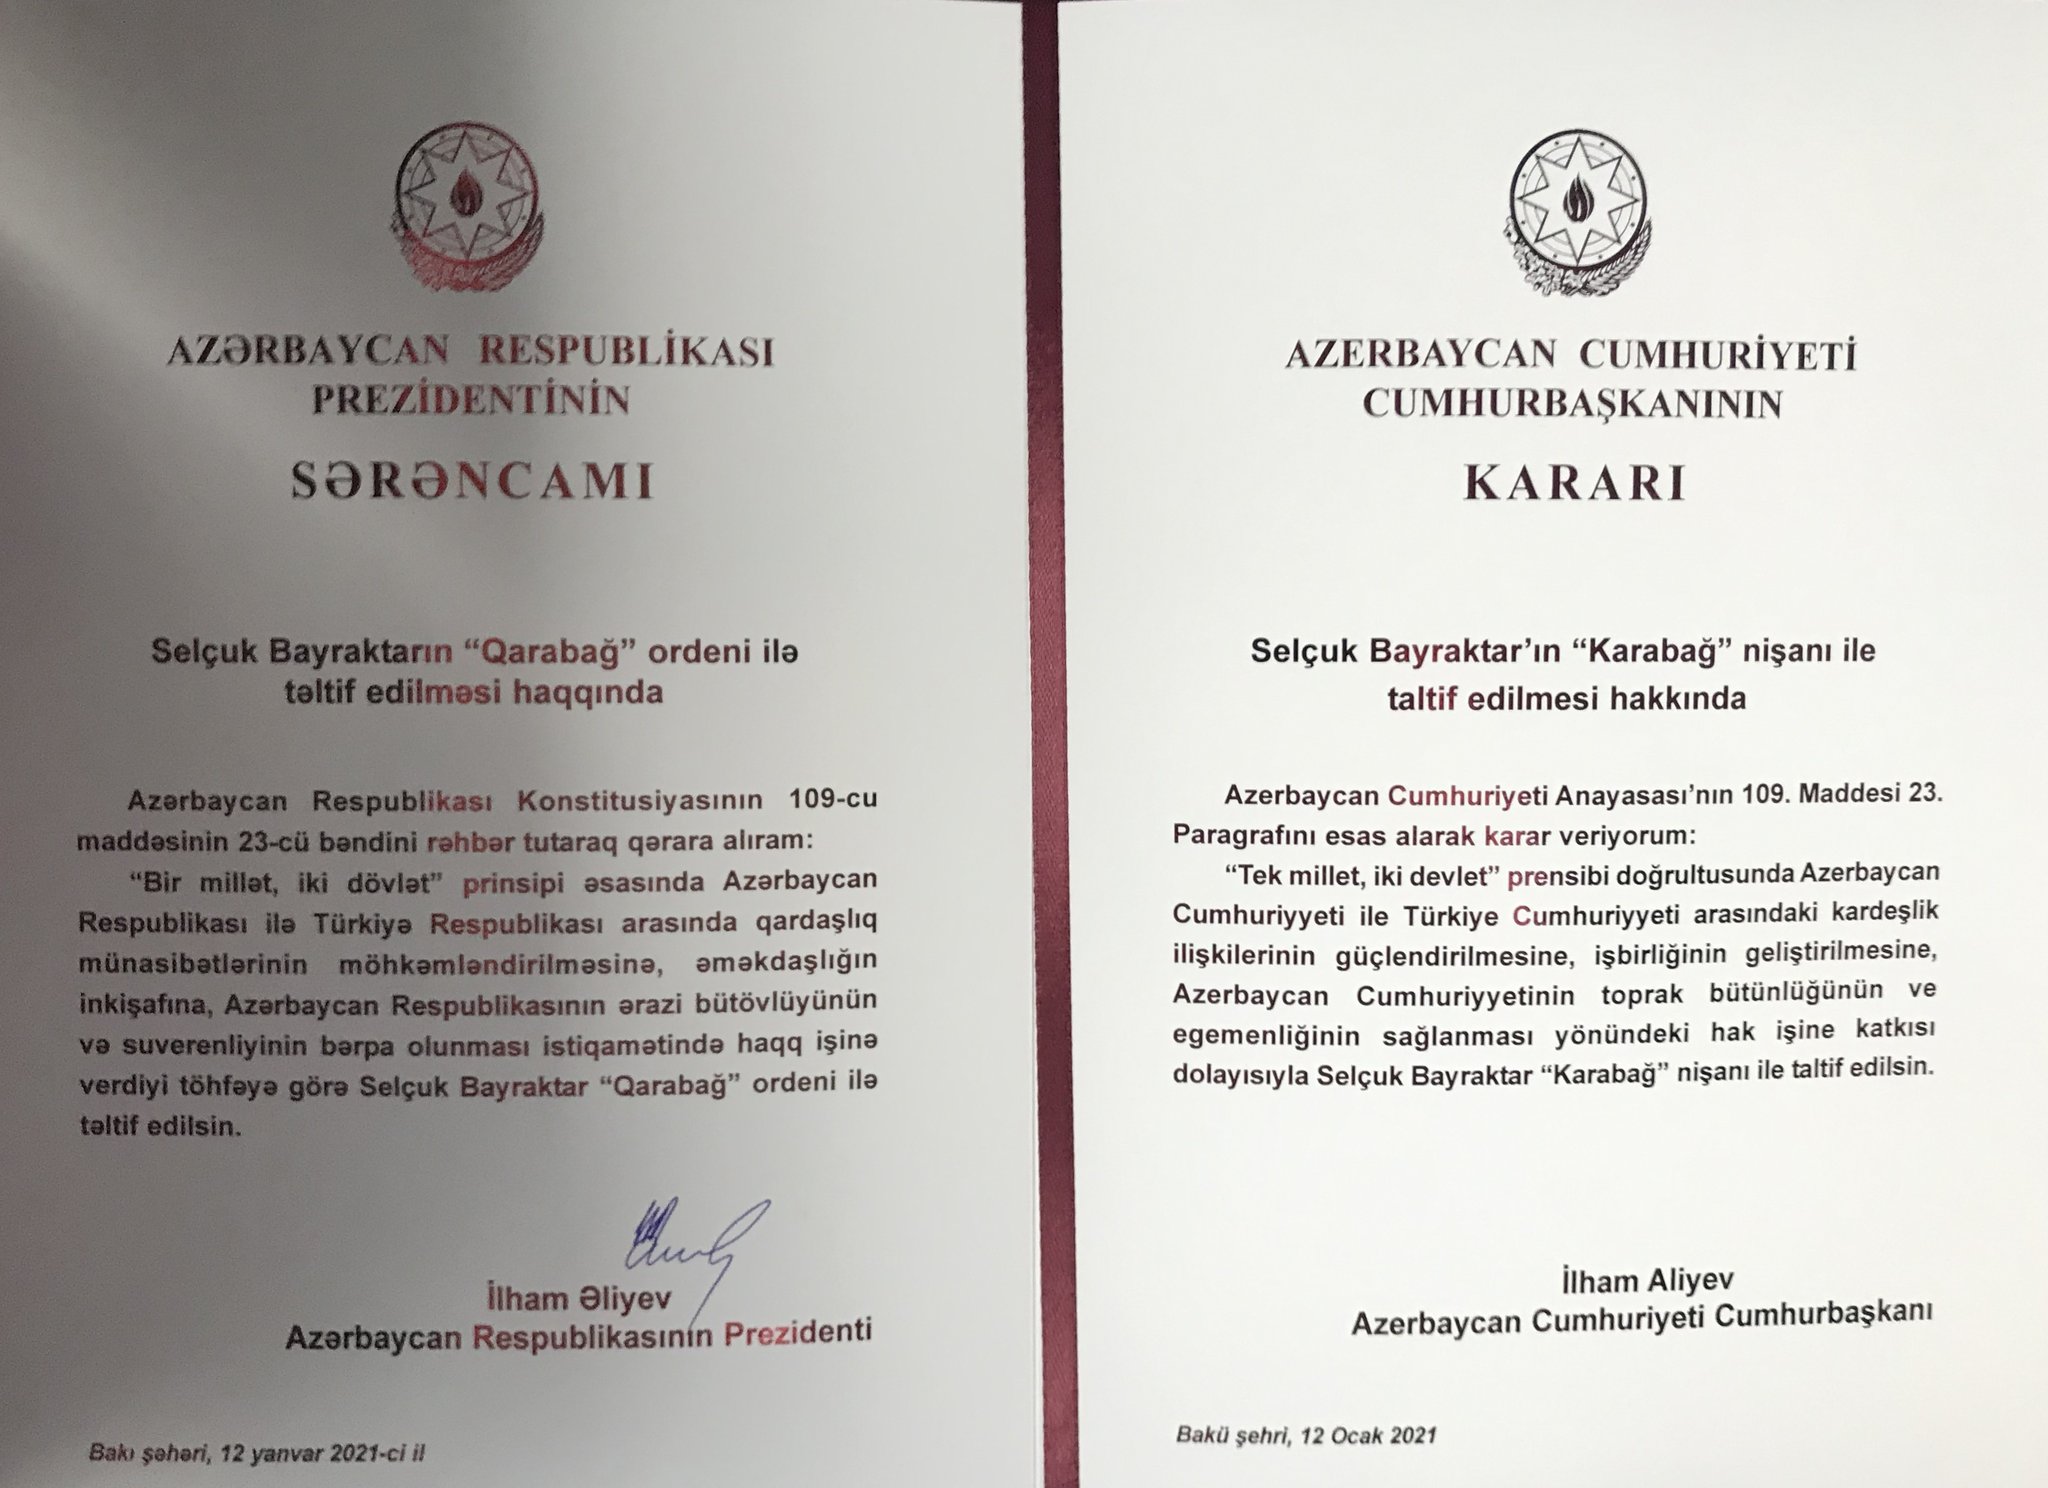 Karabagh Award to Baykar